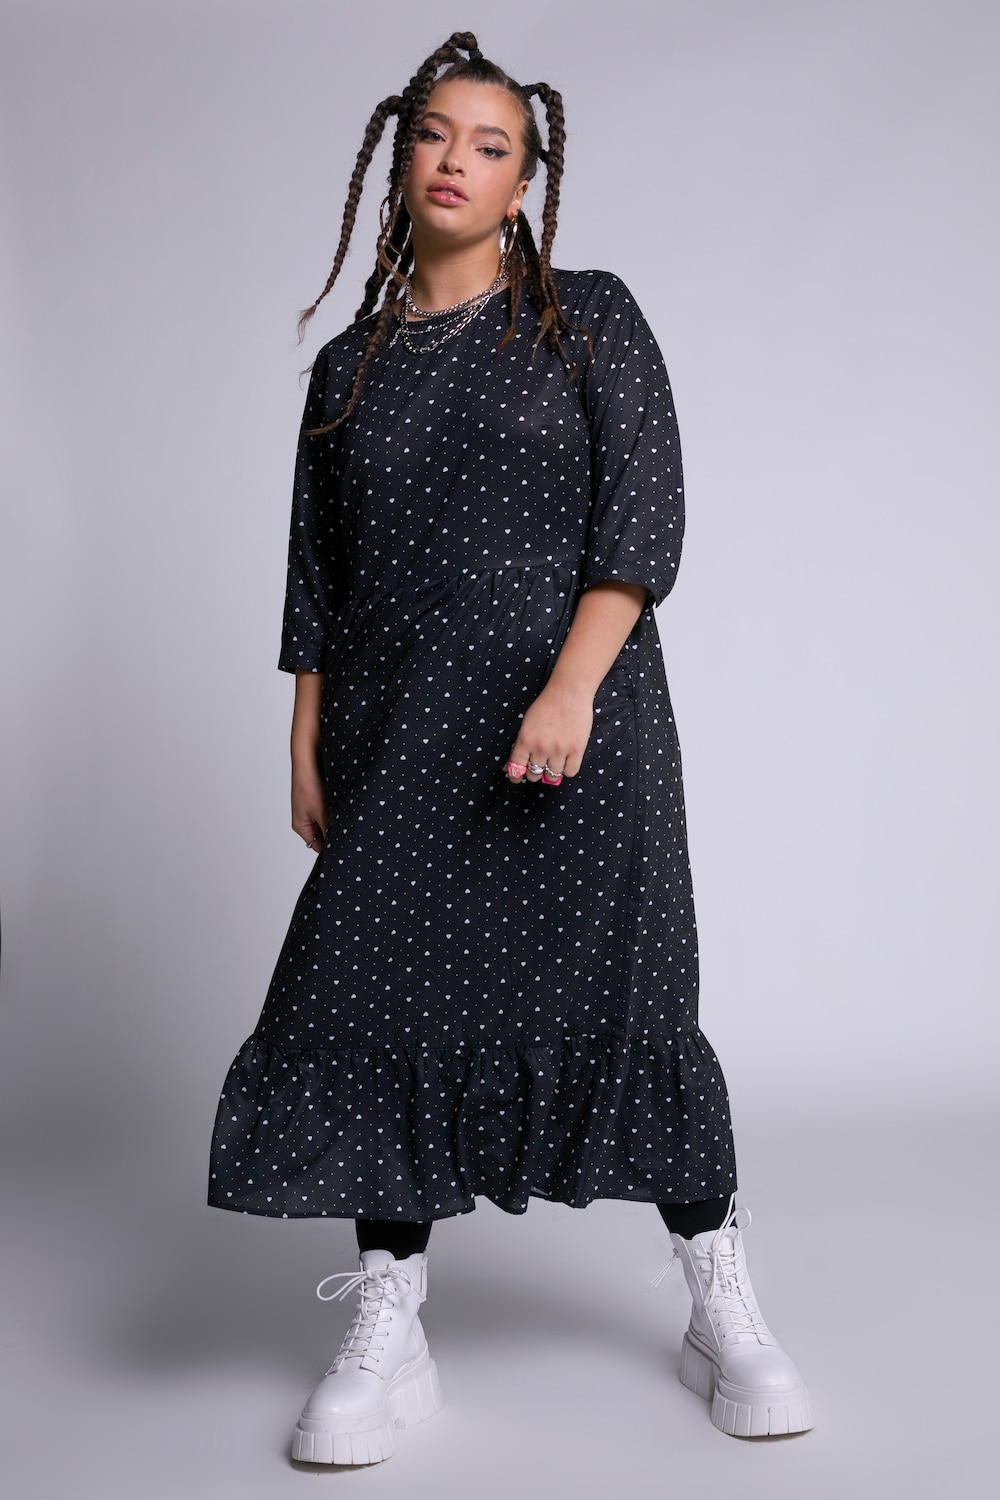 Plus Size Heart Print Dress, Woman, black, size: 16/18, polyester, Studio Untold